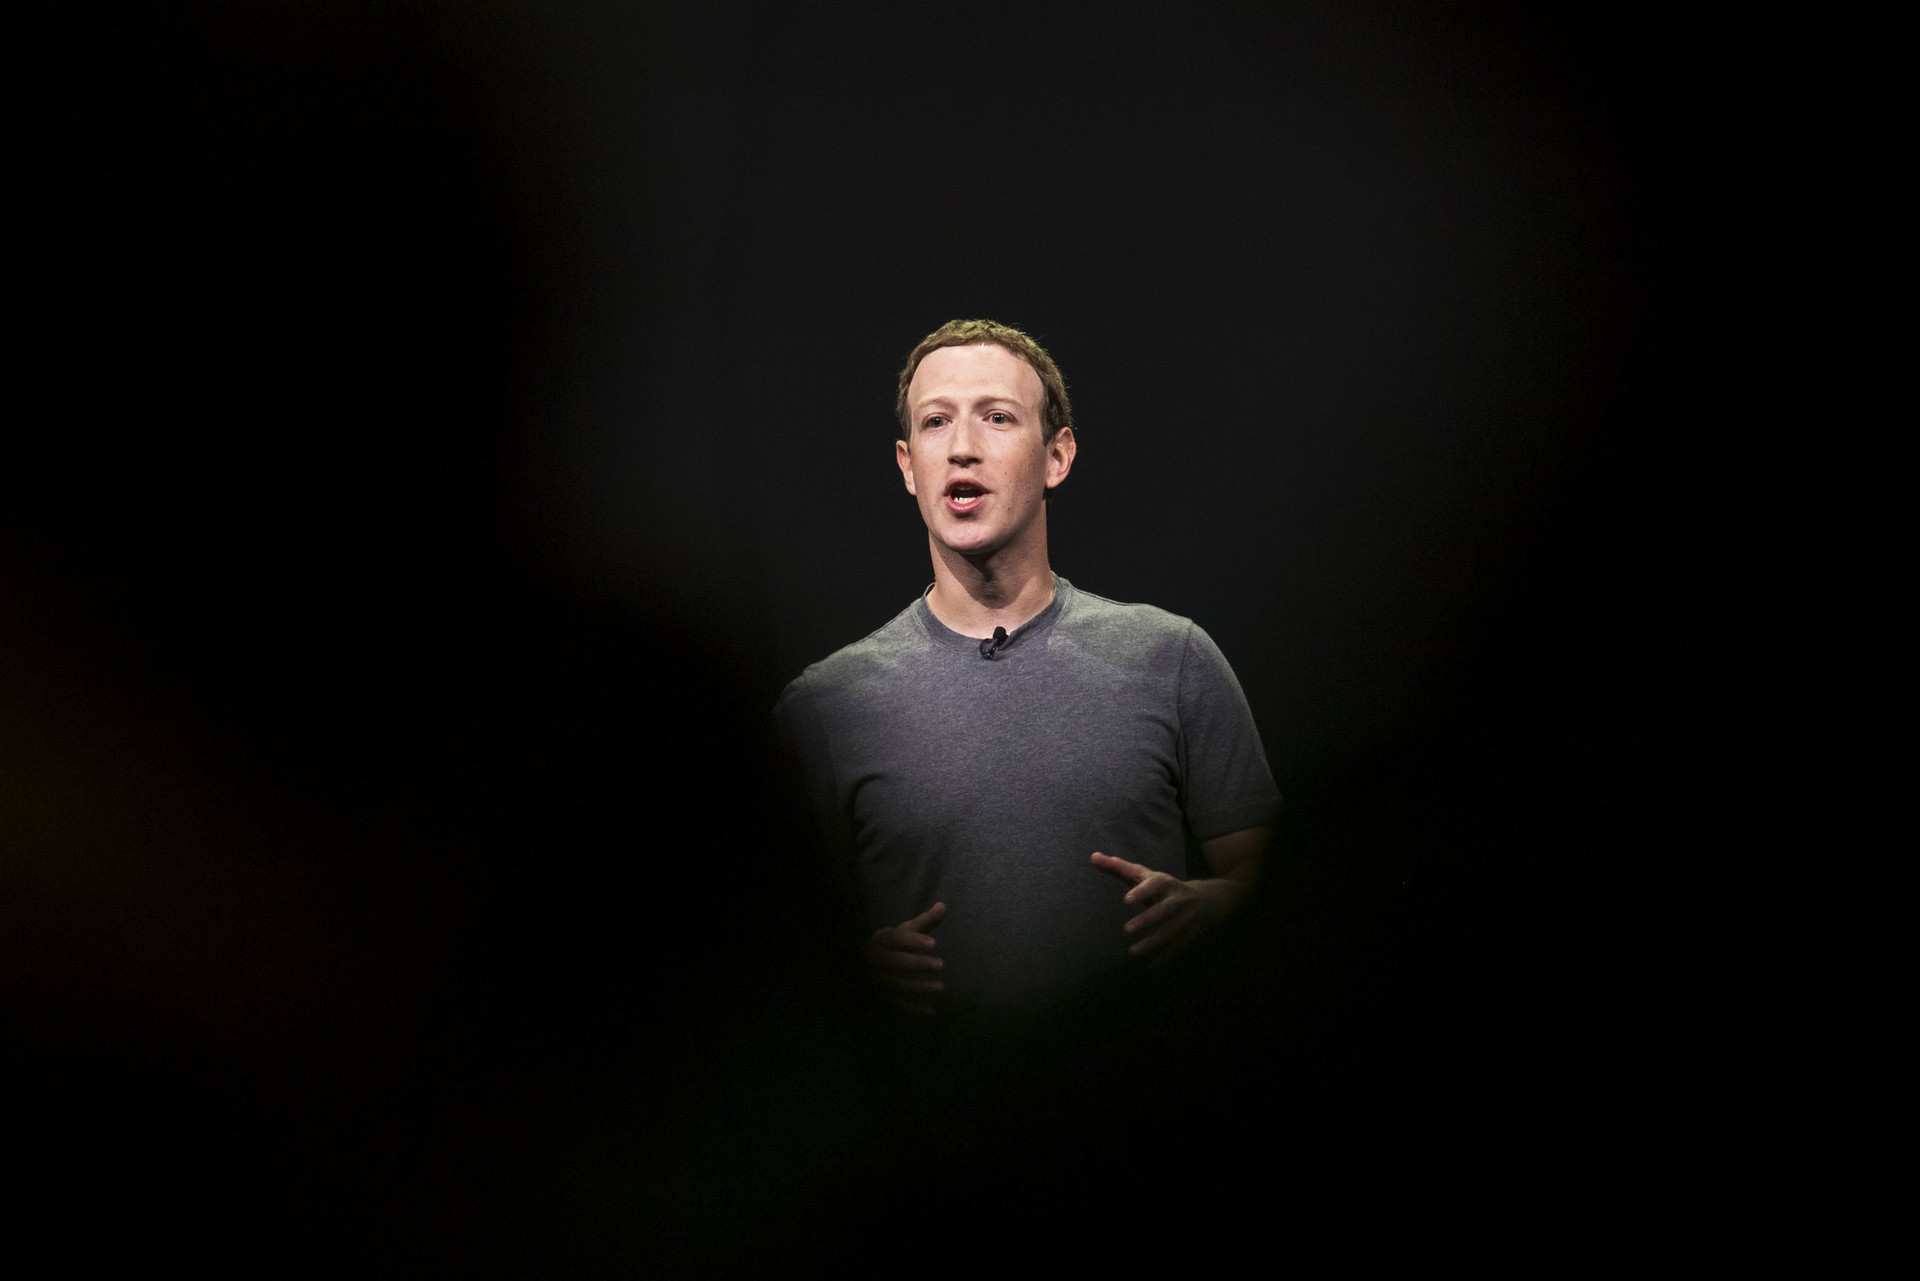 Chạy theo vũ trụ ảo, Mark Zuckerberg bỏ lơ Facebook đang ‘biến chất’: Tràn ngập spam, người dùng than phiền newsfeed quá nhiều ‘rác’ - Ảnh 1.